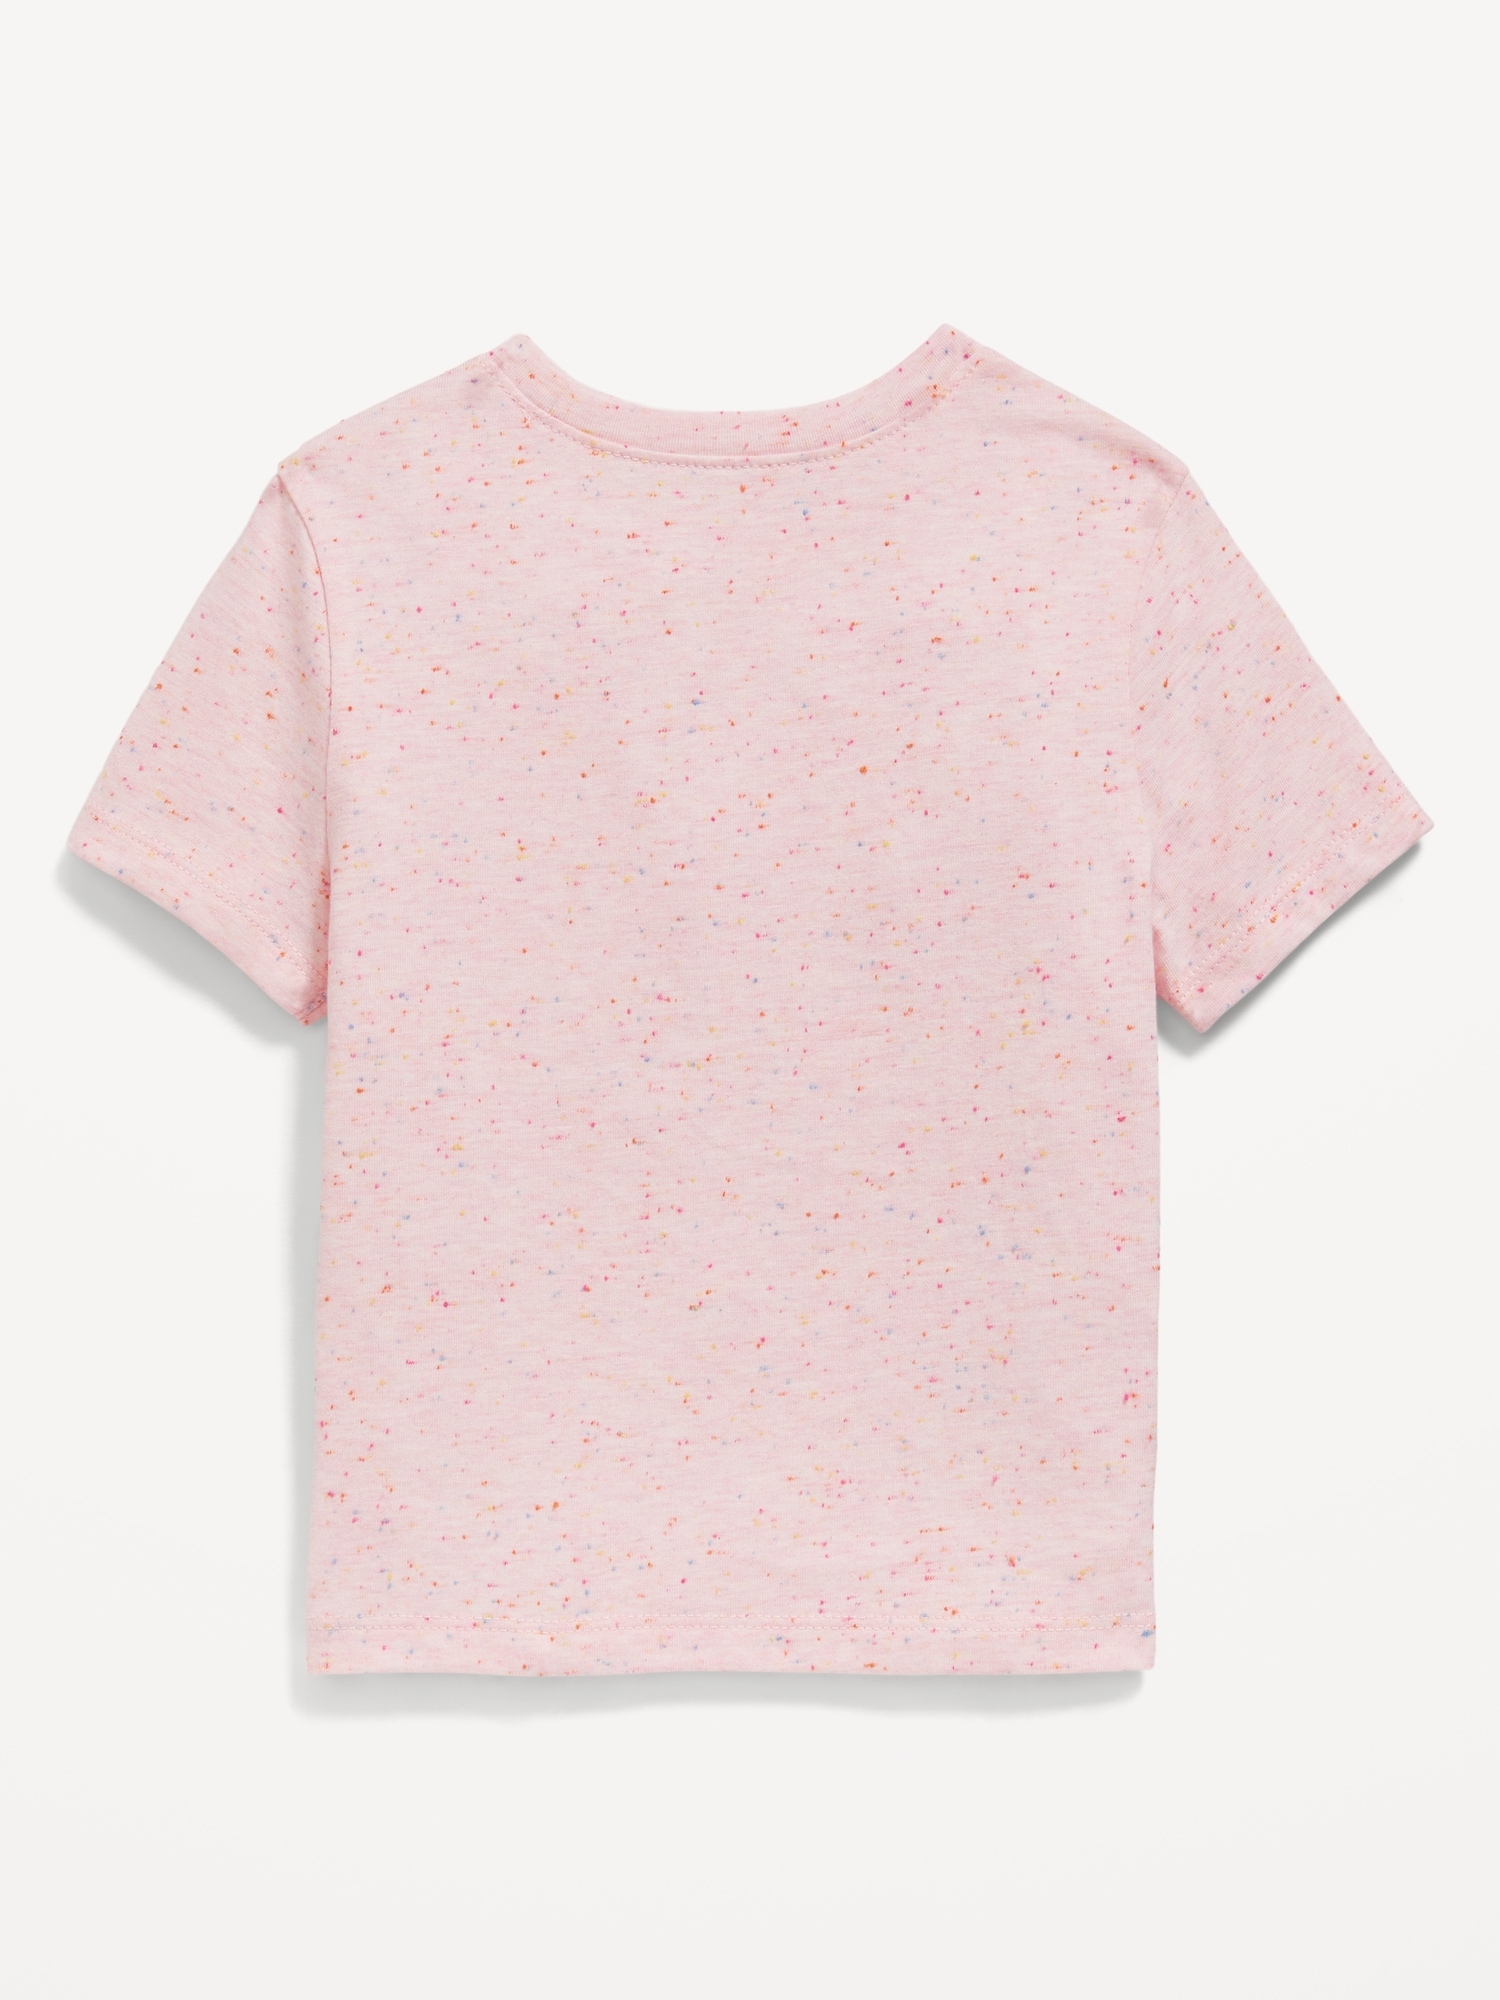 올드네이비 Unisex Short-Sleeve Patterned T-Shirt for Toddler Hot Deal